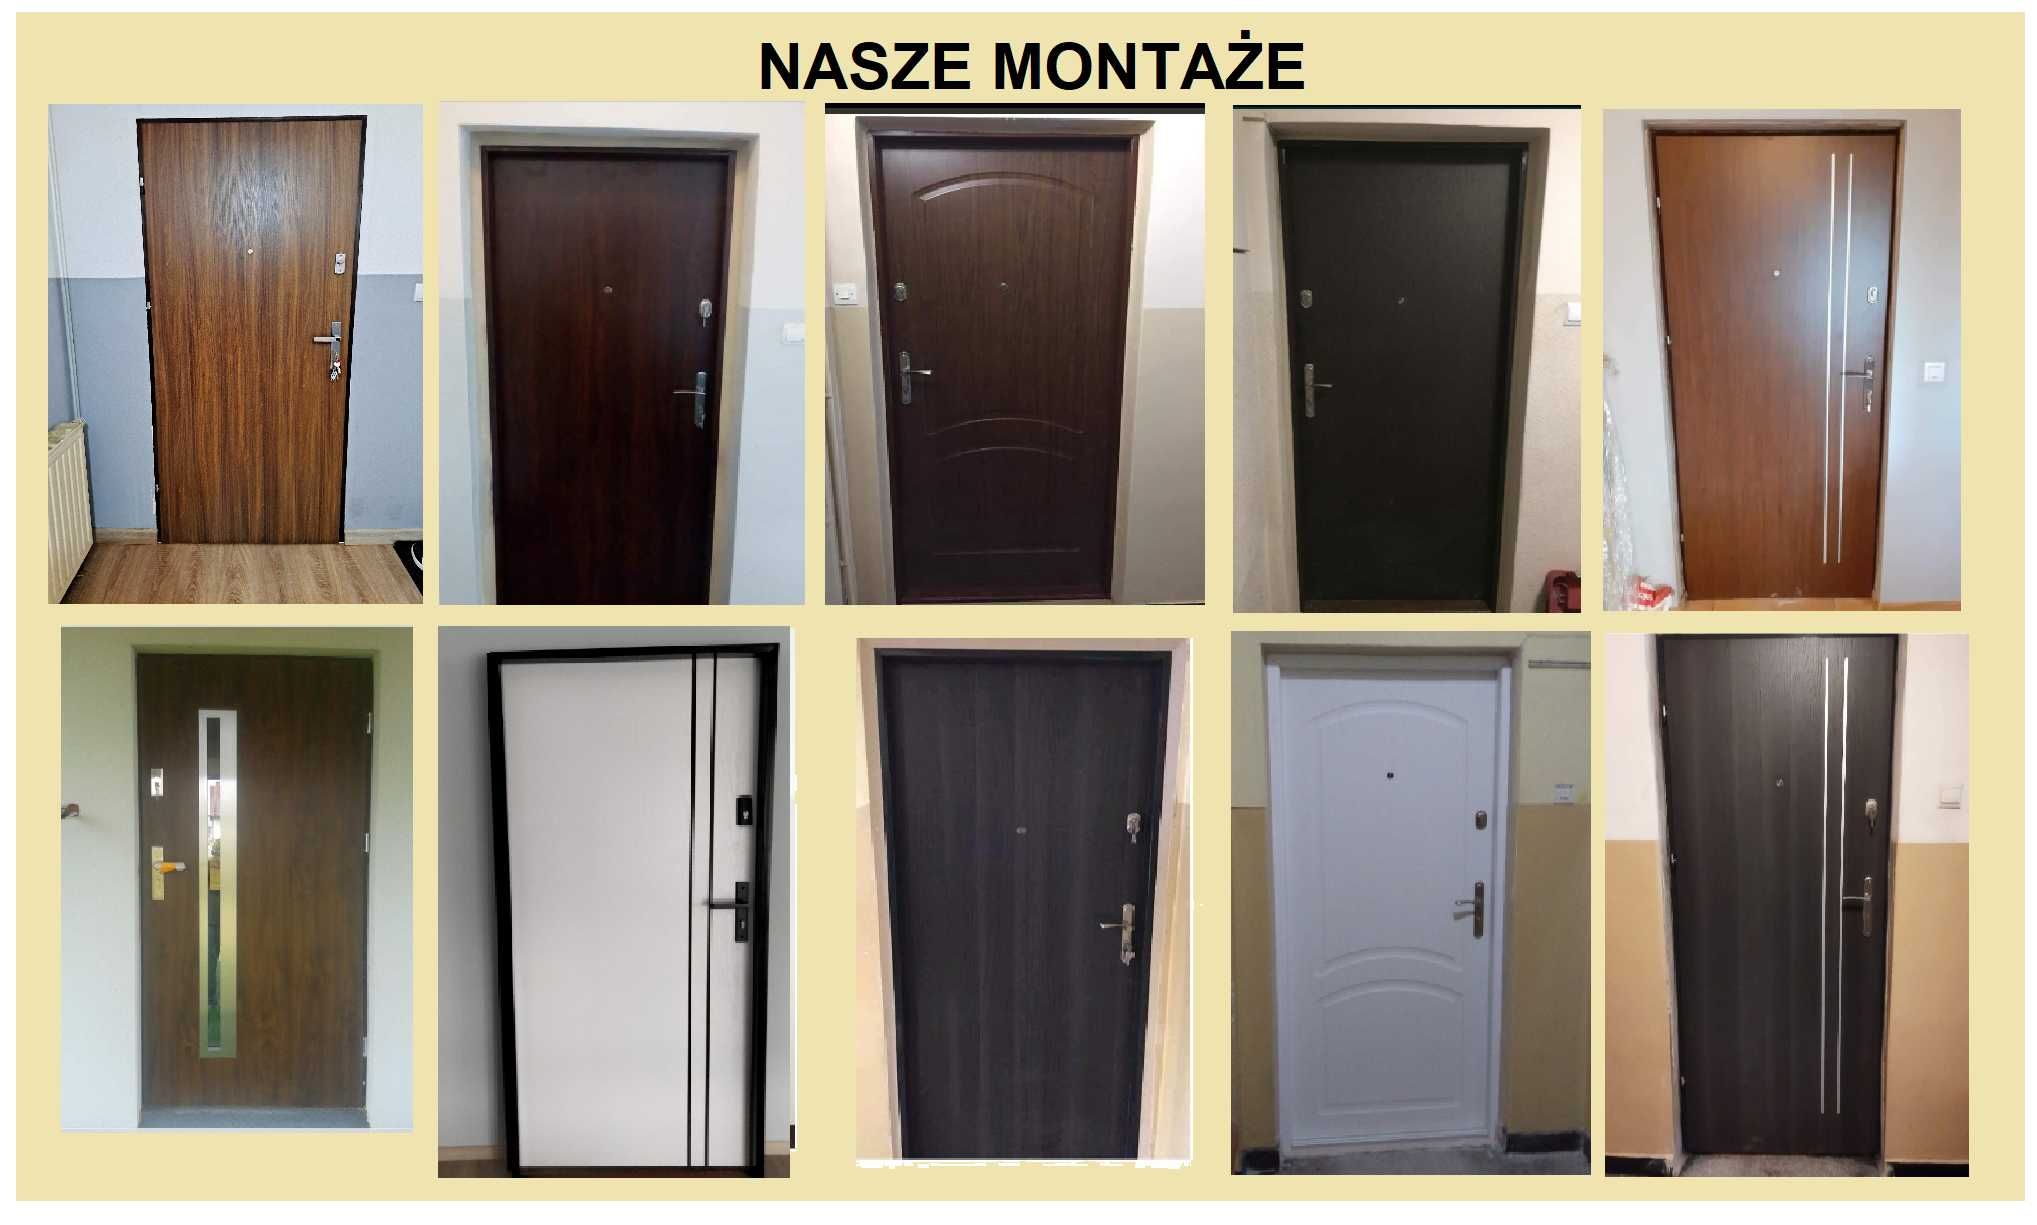 Drzwi ZEWNĘTRZNE WEJŚCIOWE- z montażem wewnątrzklatkowe do mieszkania.